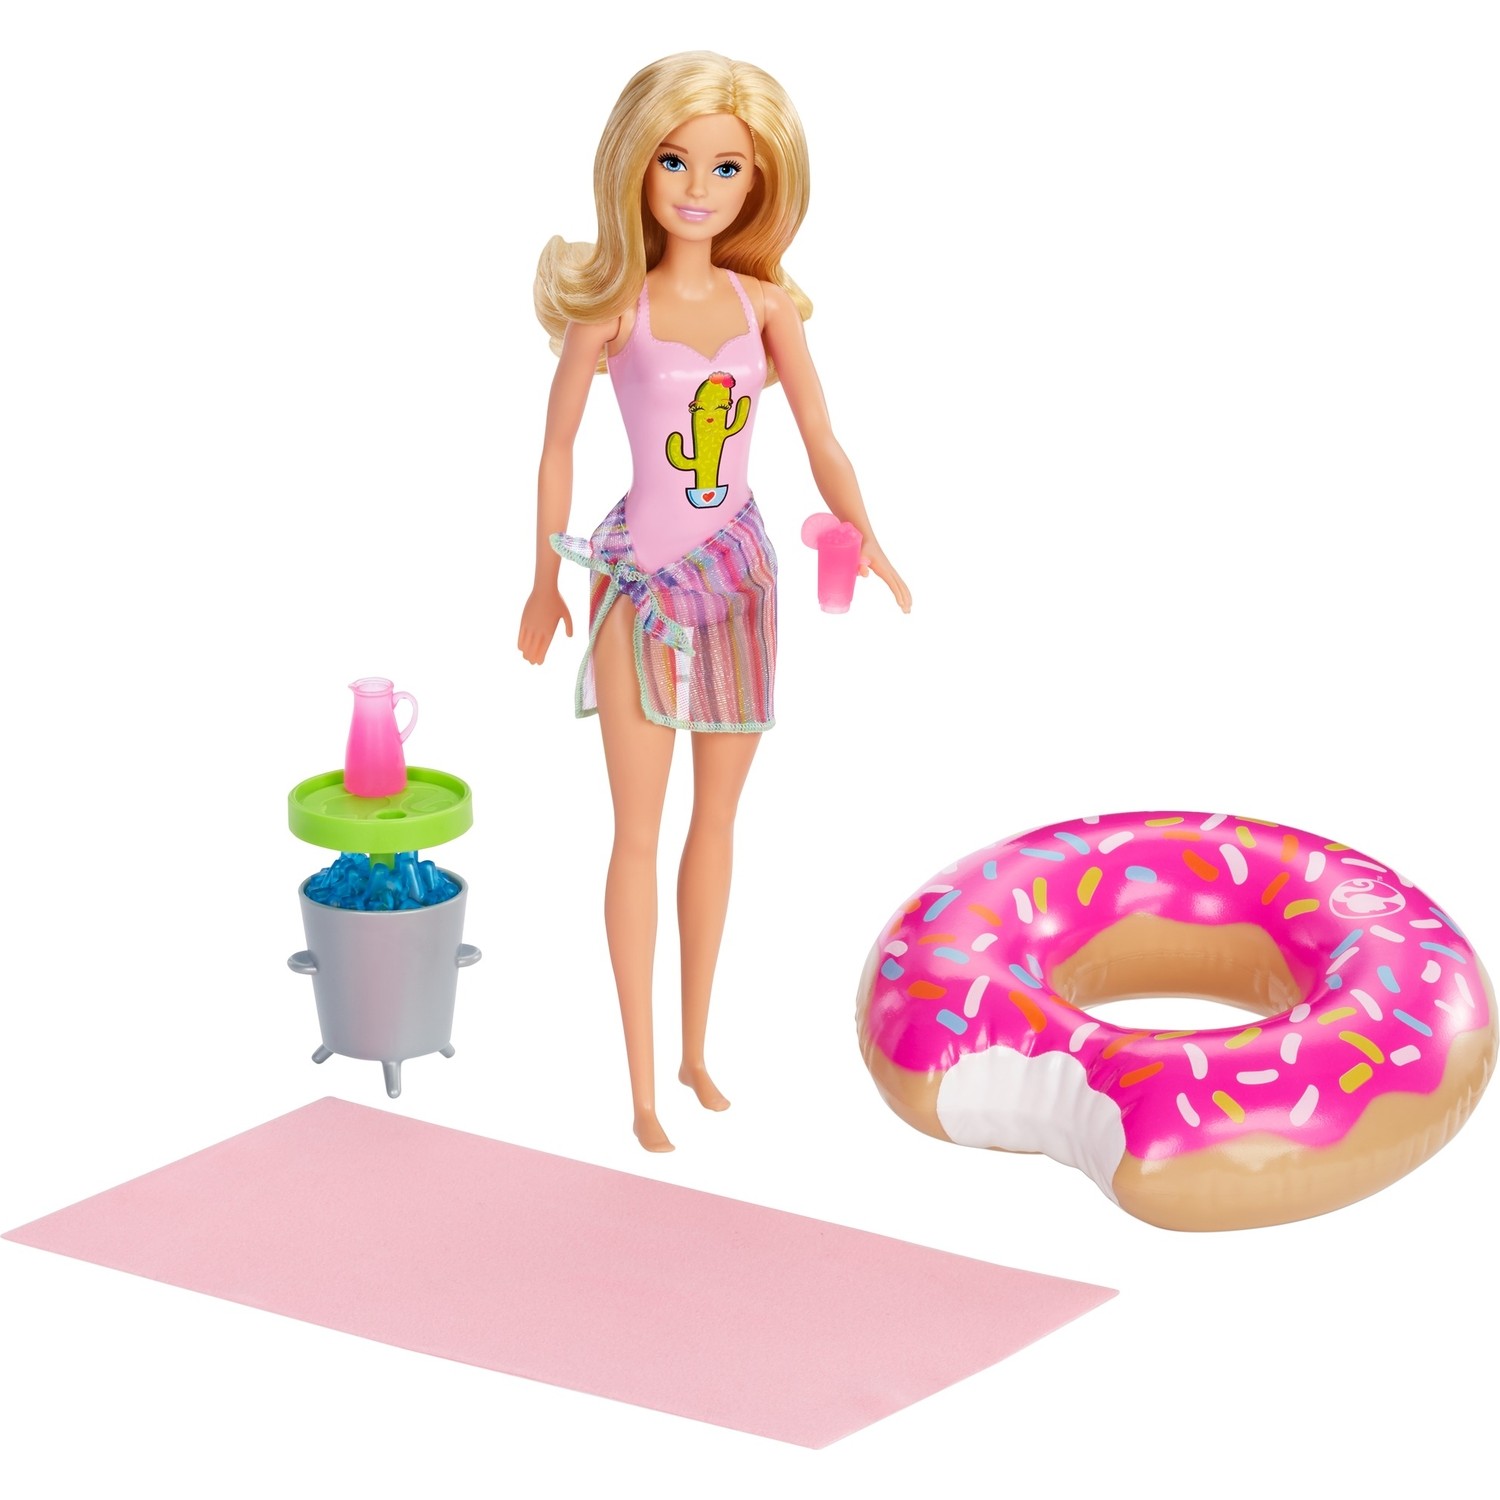 Игровой набор Barbie Donut GHT20 набор barbie виртуальный мир автомобиль с мини куклой 10 см dtw18